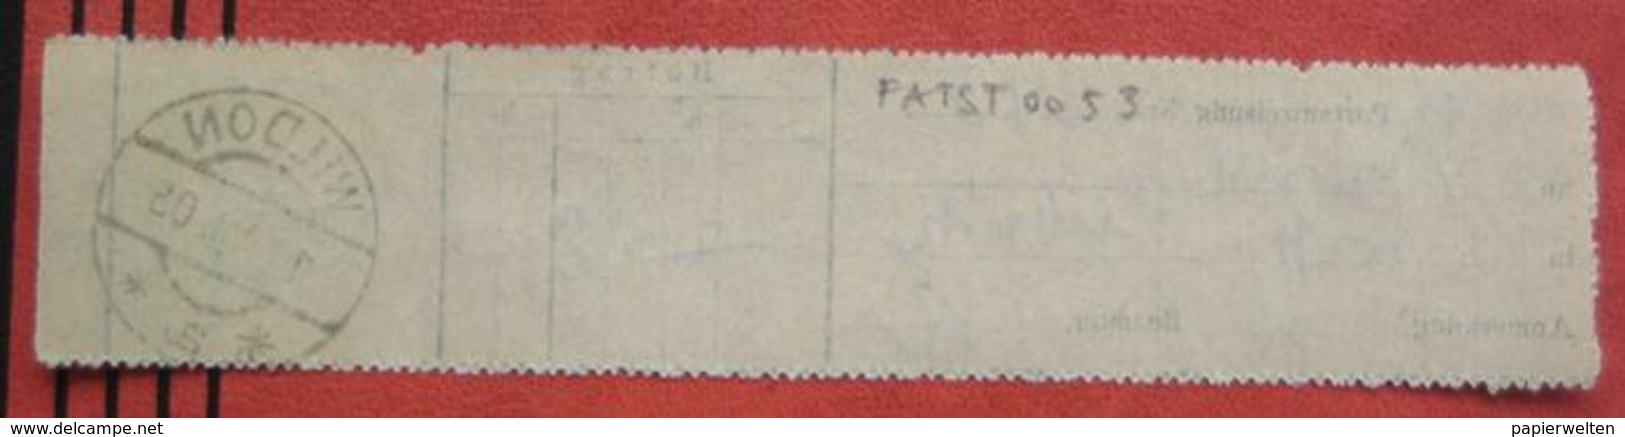 8410 Wildon - Aufgabeschein über Postanweisung 1905 - Maschinenstempel (EMA)